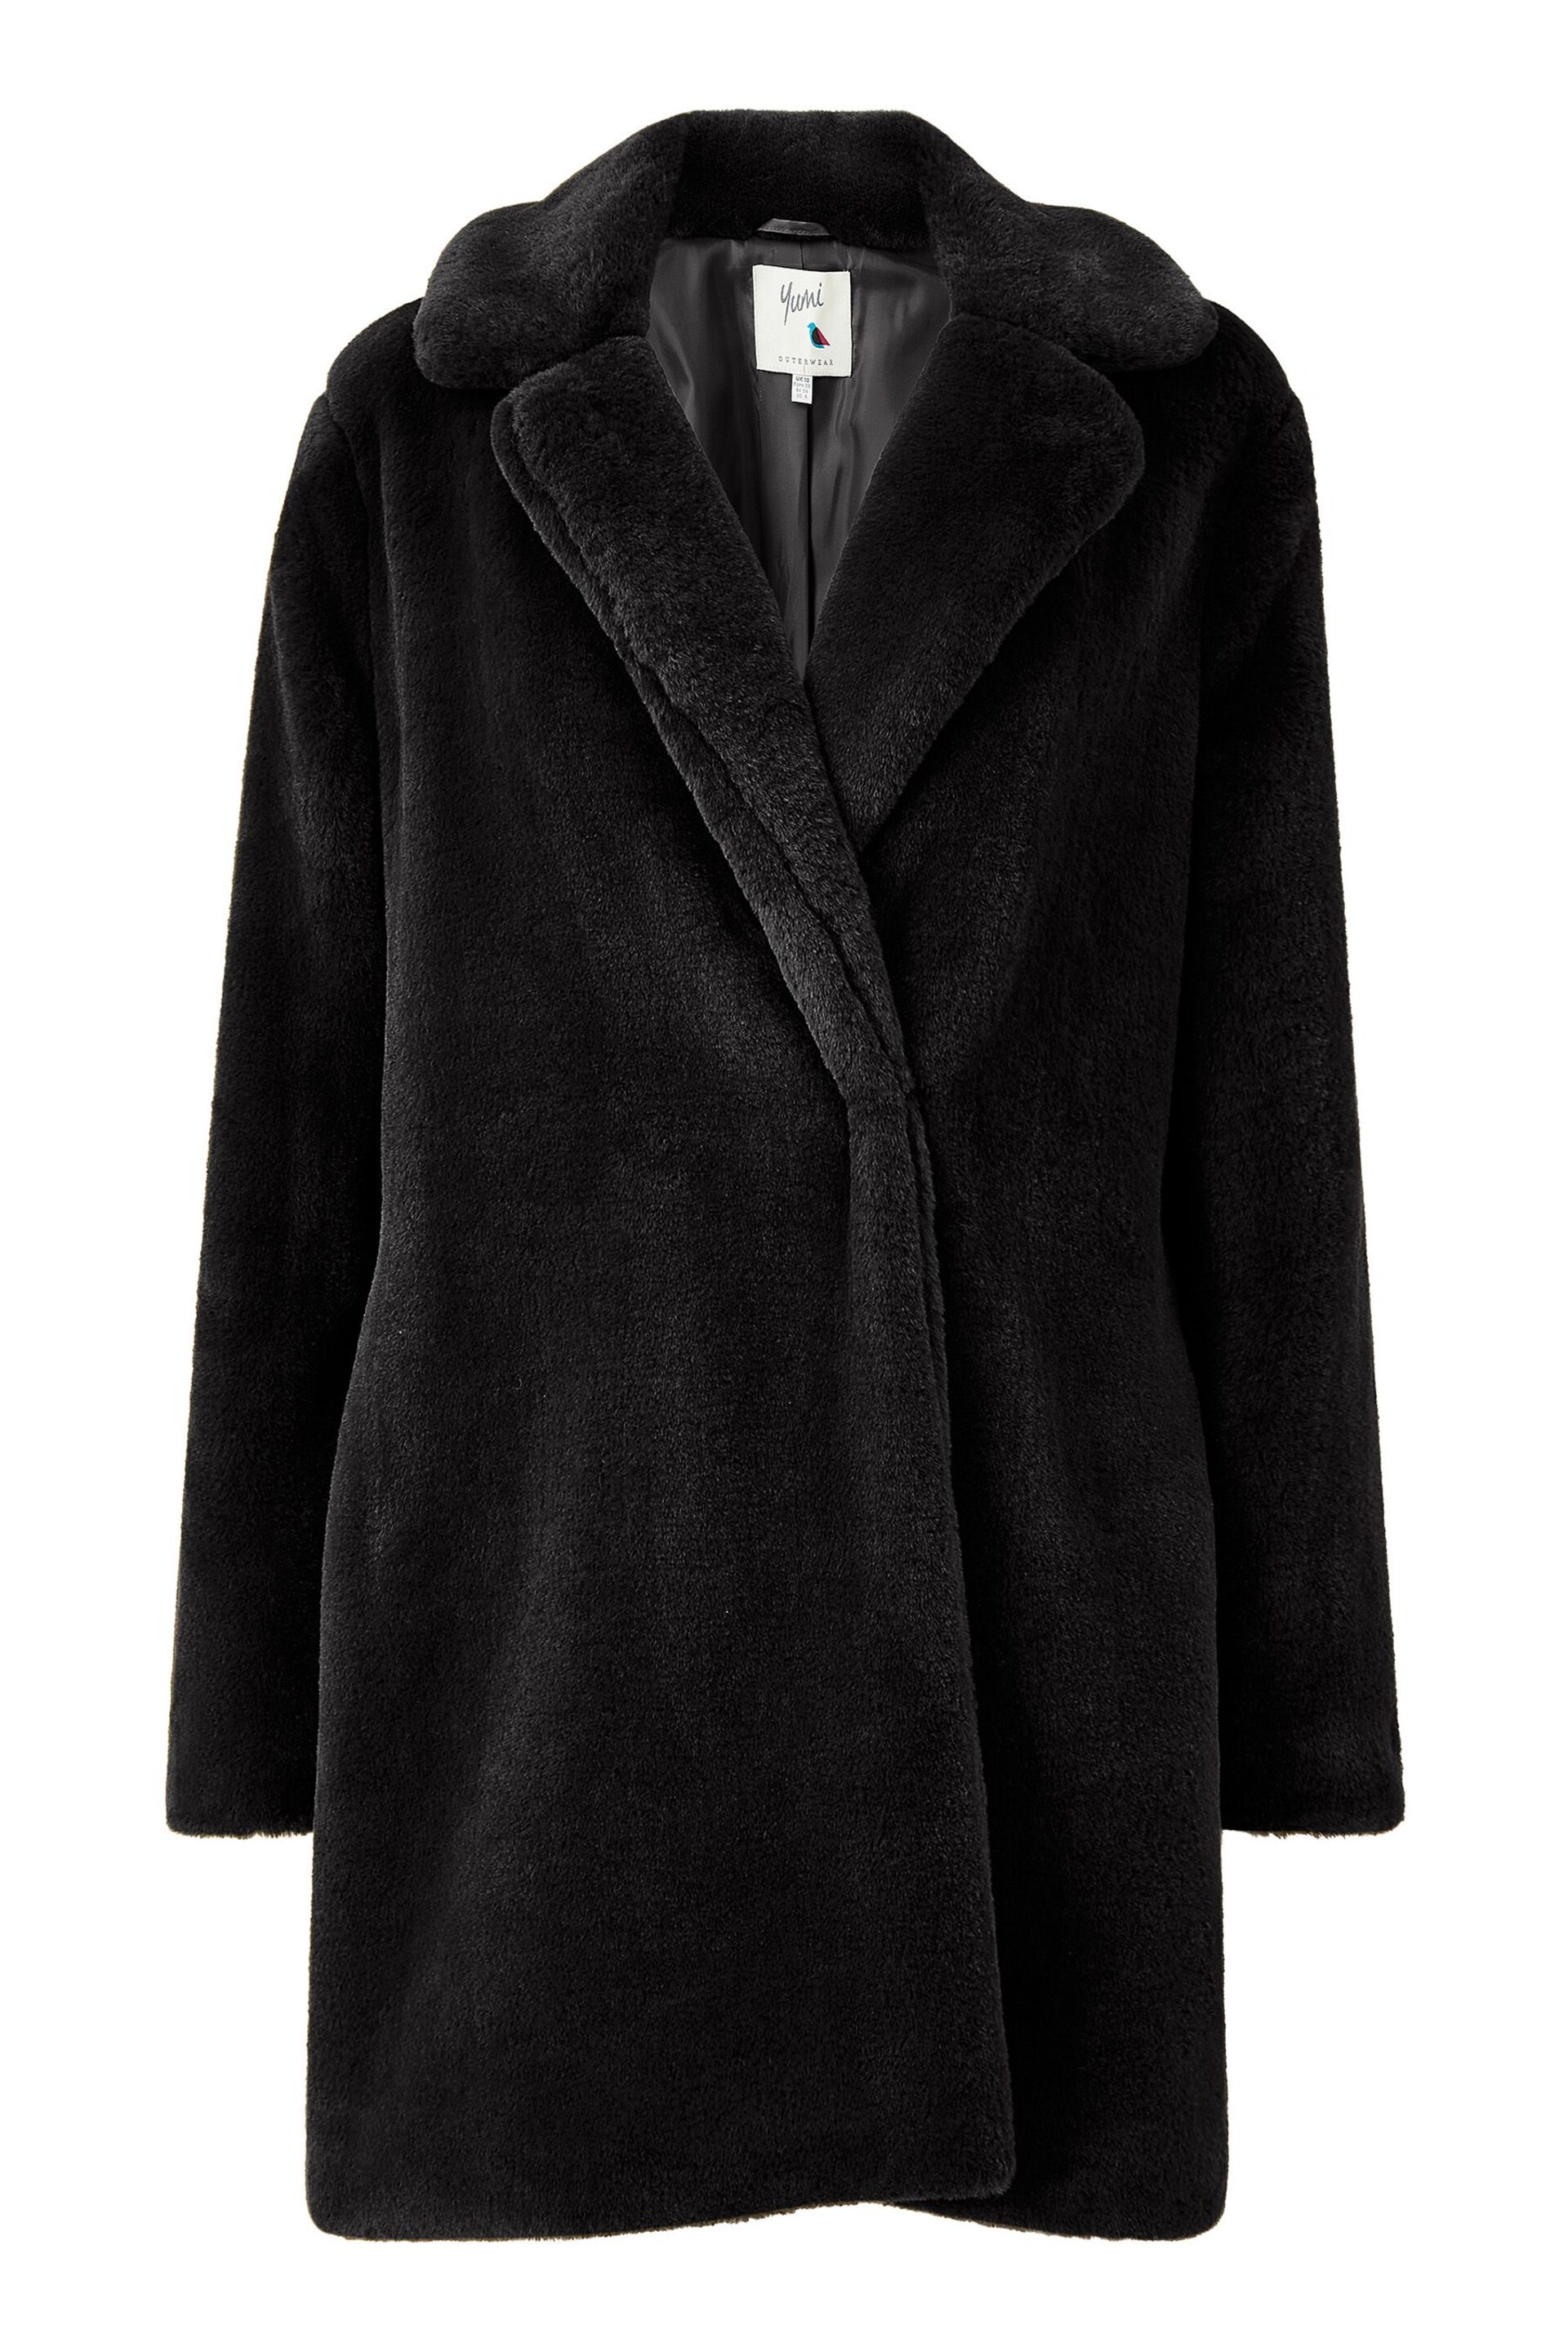 Yumi Black Faux Fur Coat - Image 5 of 5